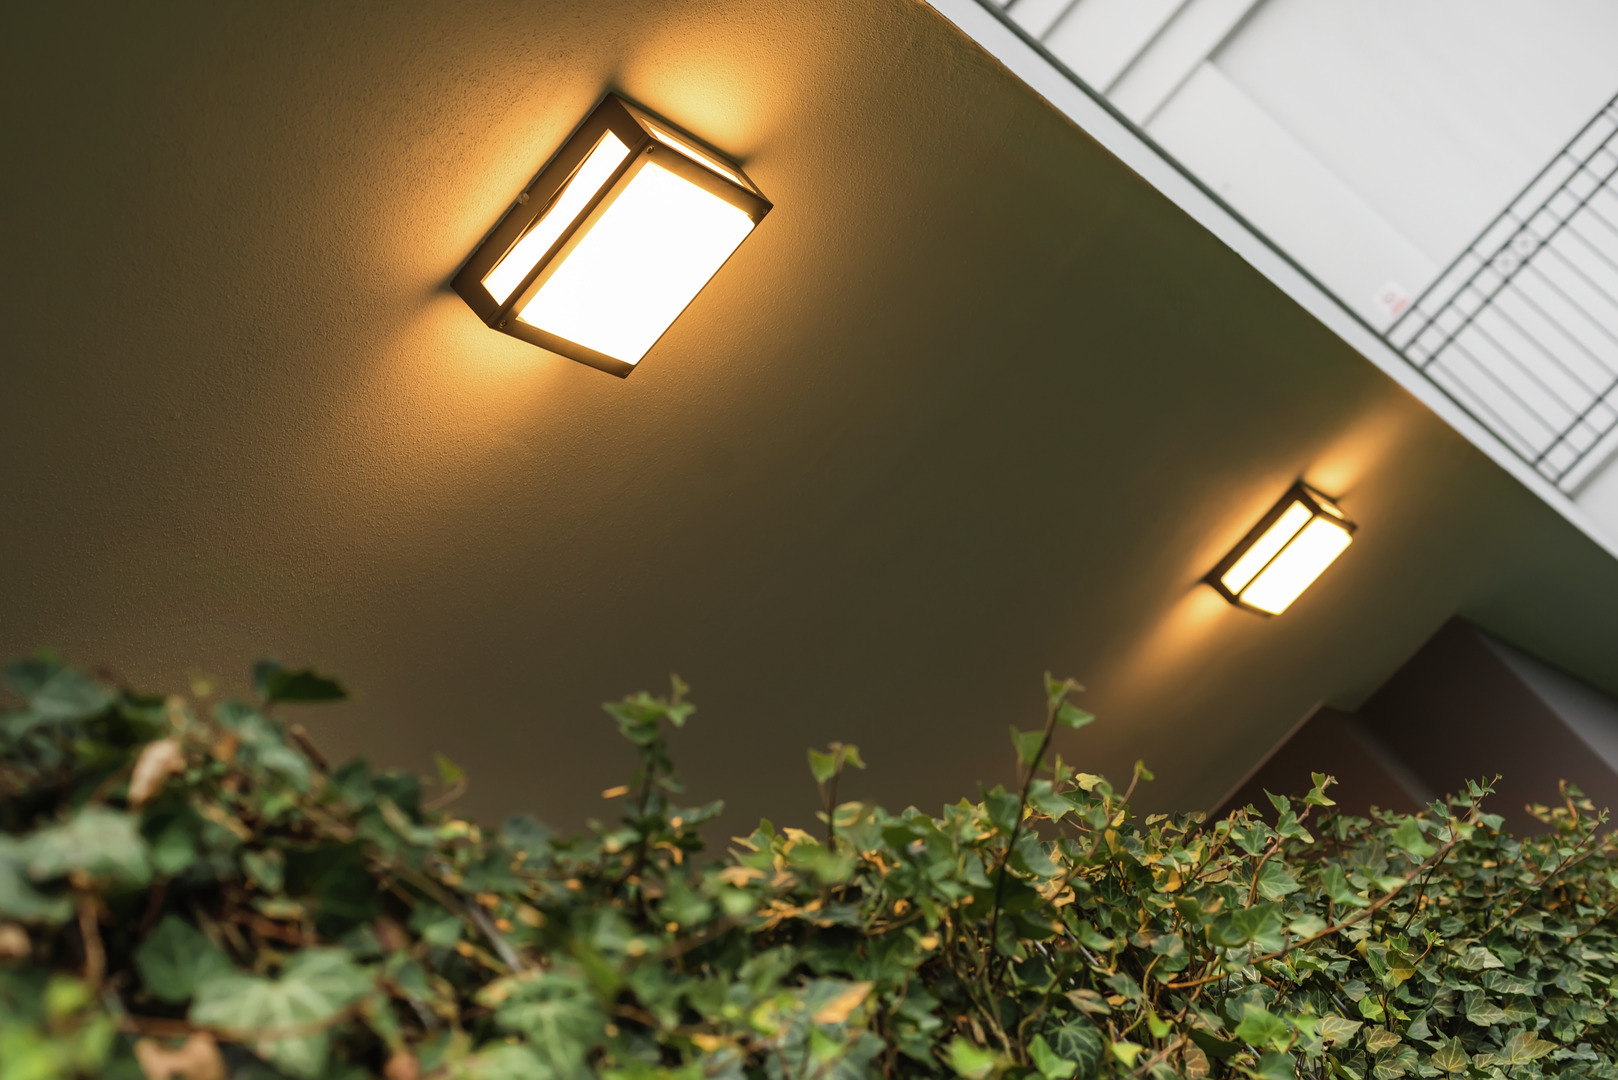 Entdecken Sie die Norlys skandinavische Designlampe mit dem Flair von Nordland und skandinavischer LED-Beleuchtungsqualität. Zeitloses Design und erstklassige Qualität vereint in einer Leuchte.